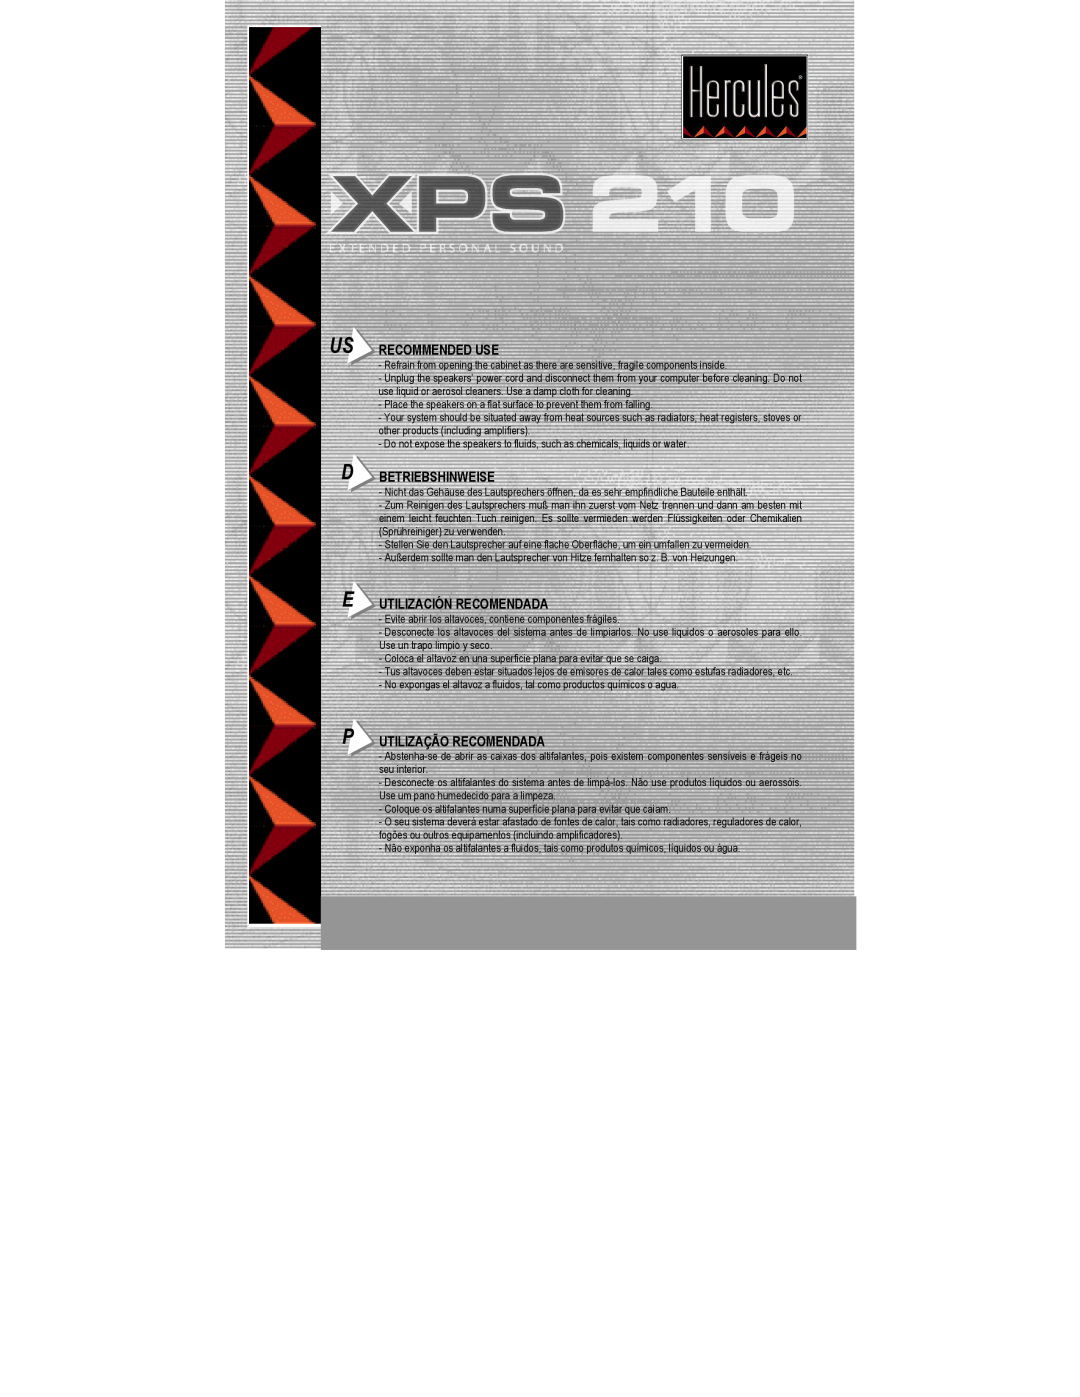 Hercules Computer Technology XPS 210 manual Recommended Use, Betriebshinweise, Utilización Recomendada 